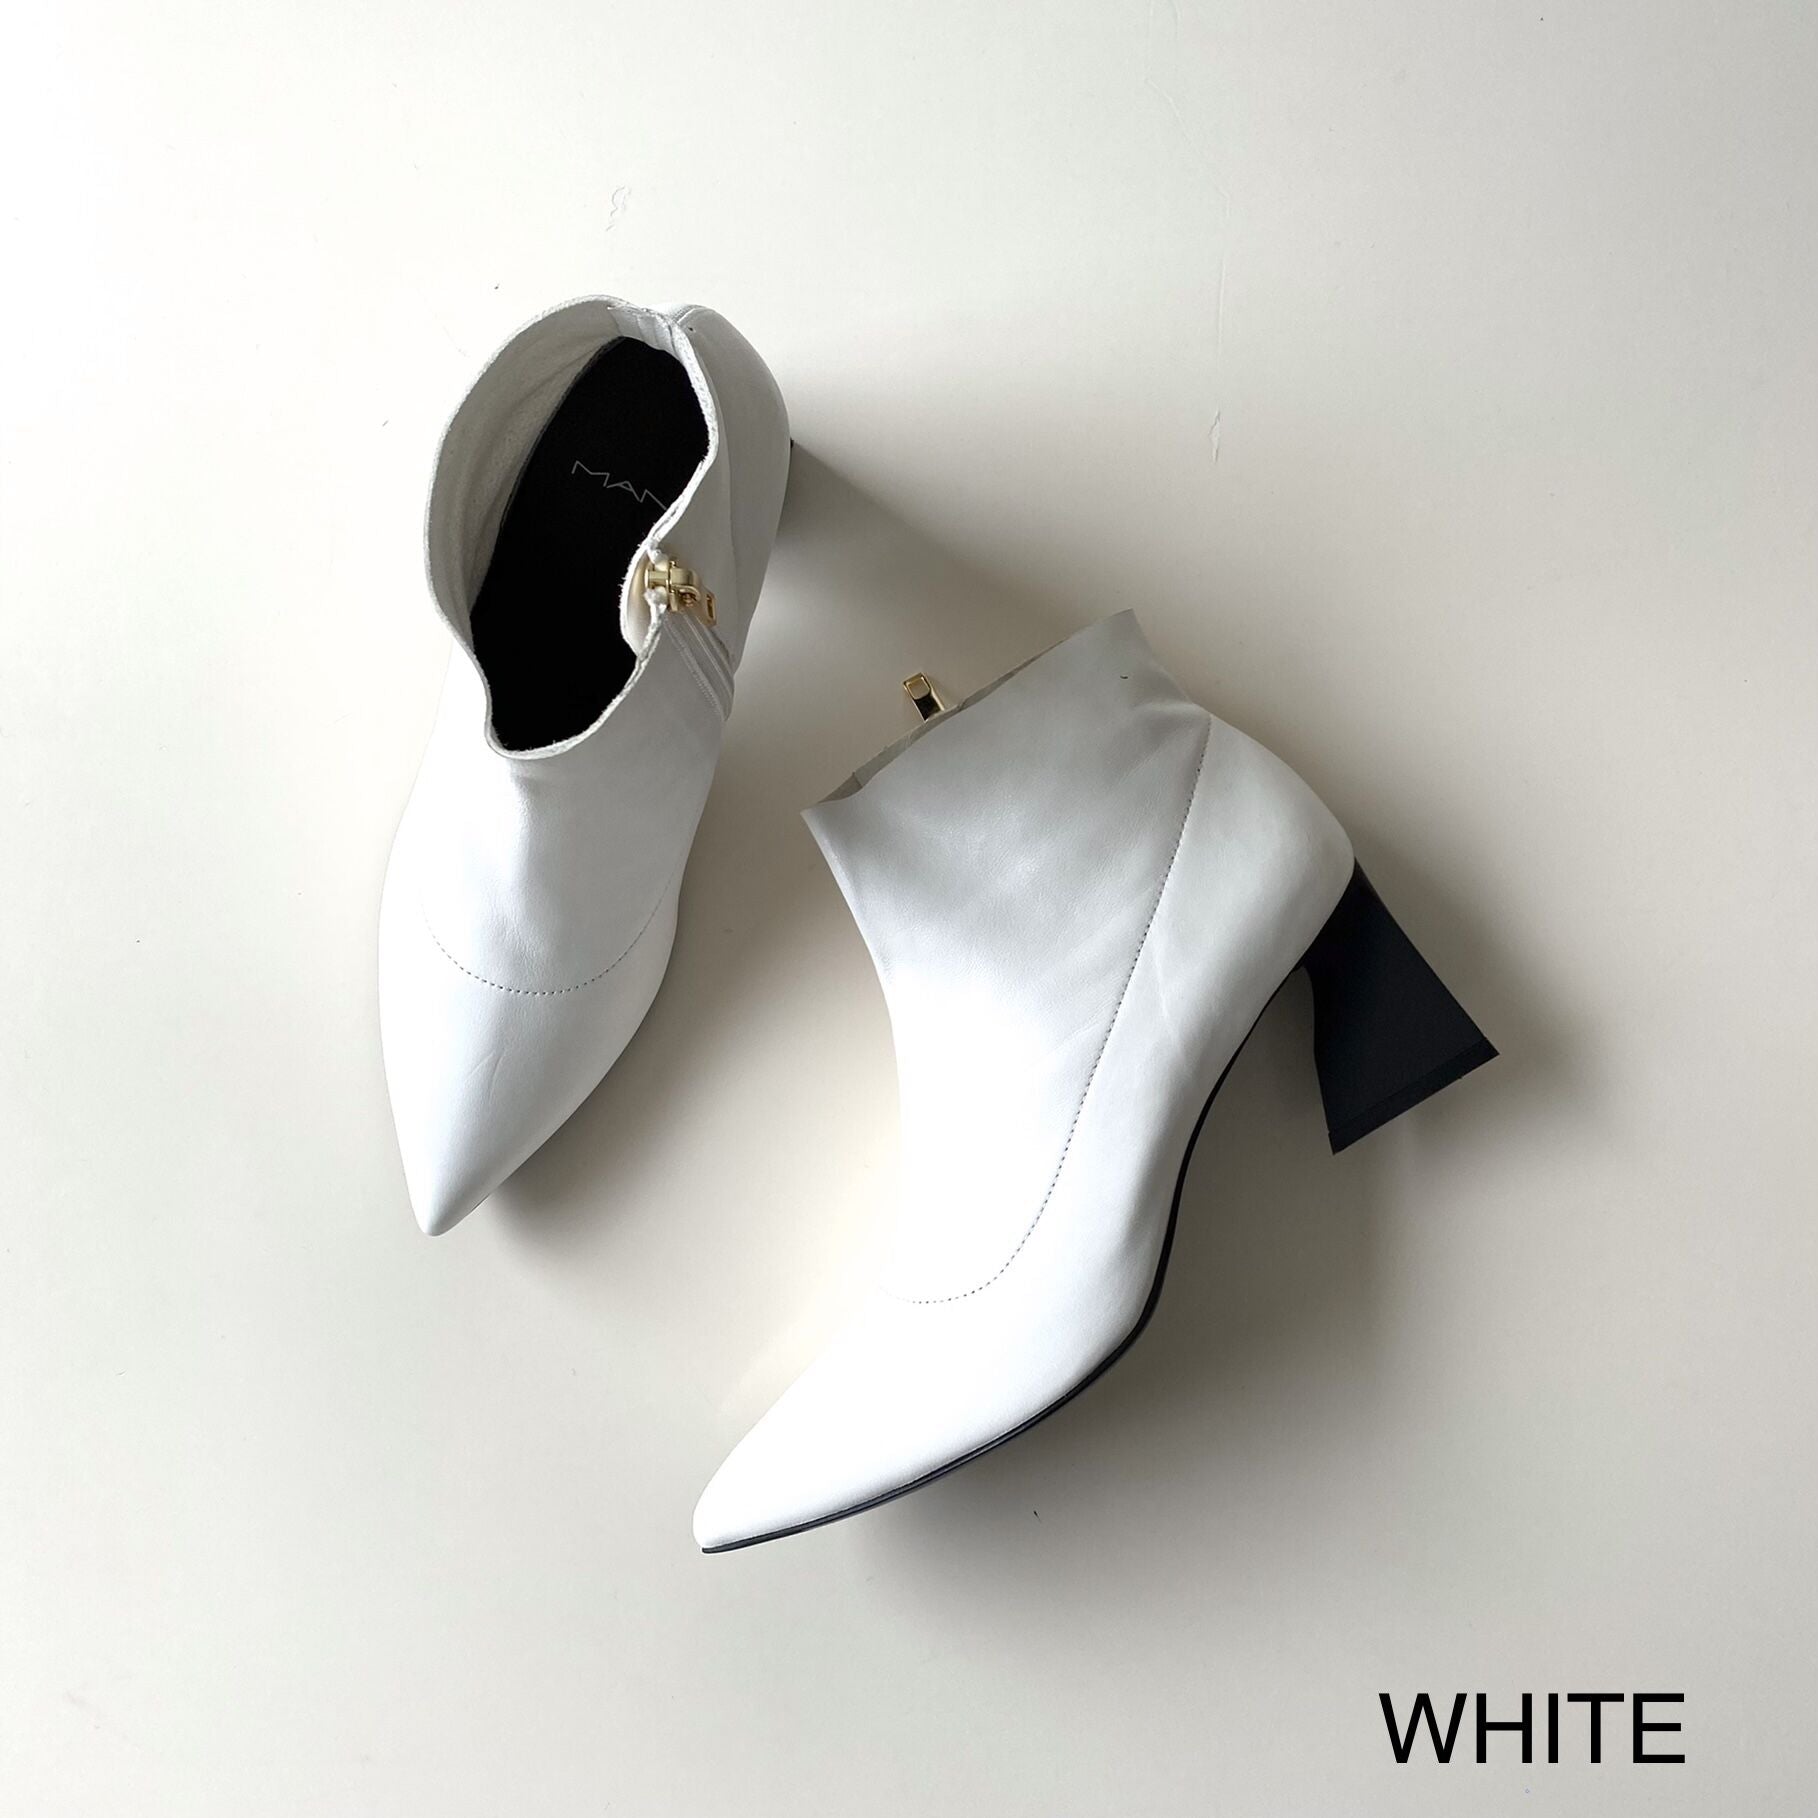 WHITE / 35 (22.5cm)